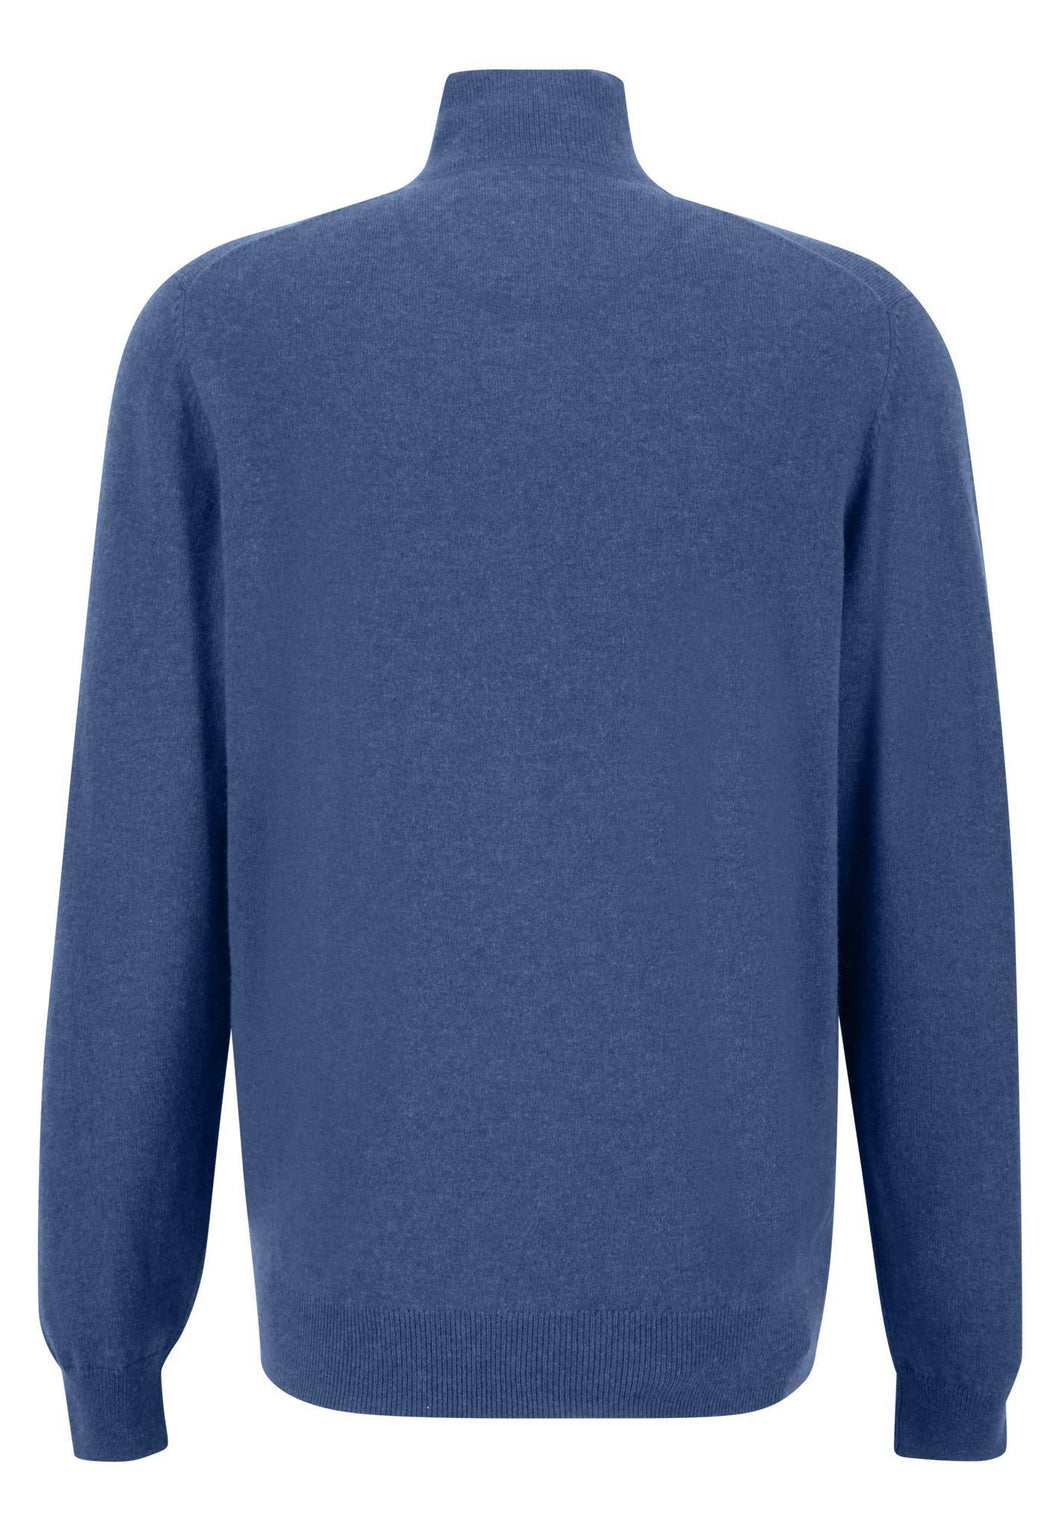 New Fynch Hatton Cashmere/Merino Blue 1/4 Zip Sweater